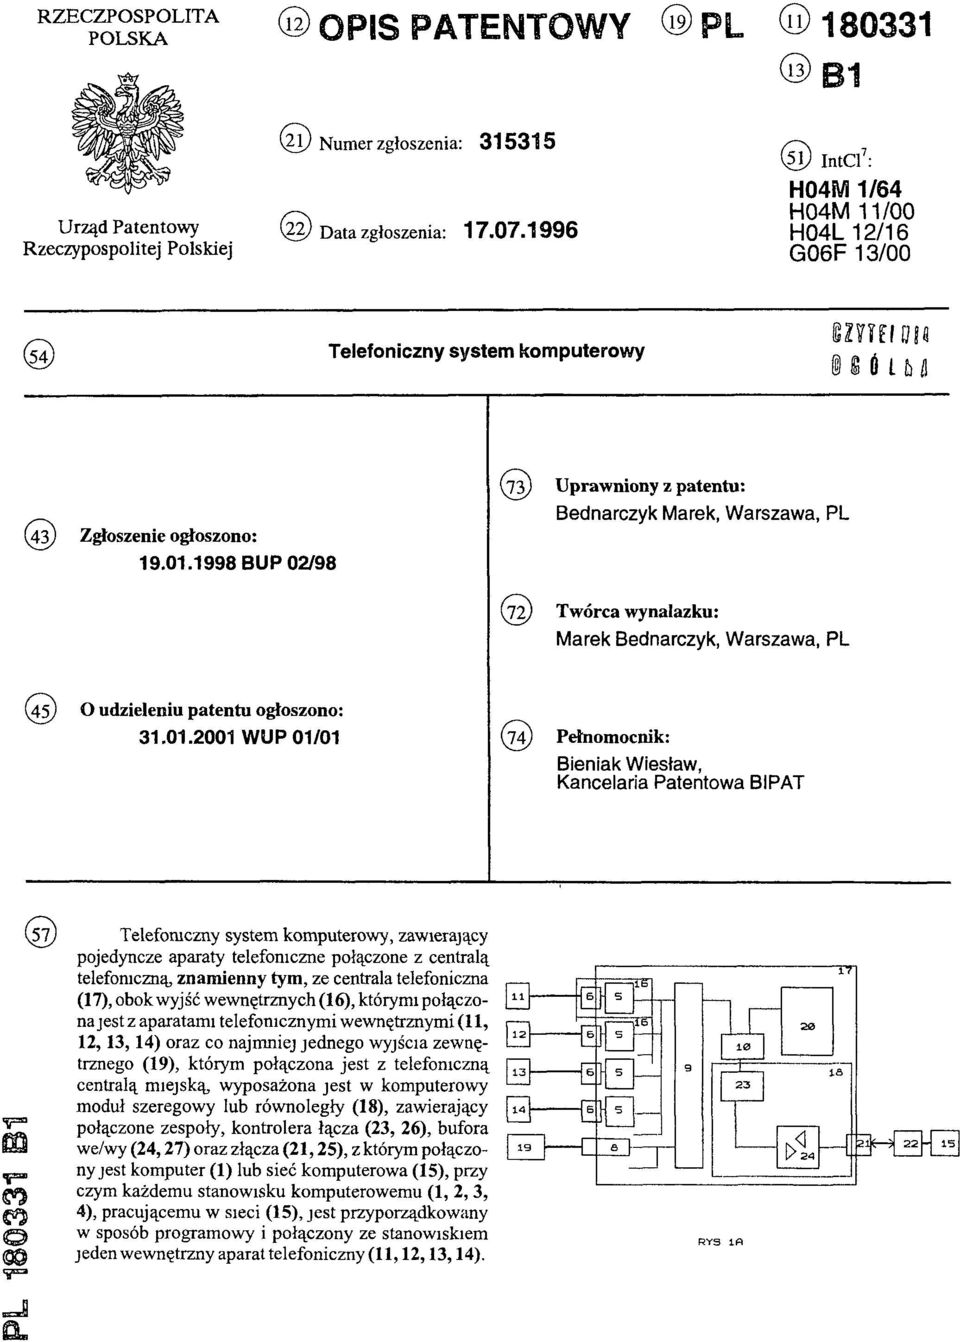 1998 BUP 02/98 (73) Uprawniony z patentu: Bednarczyk Marek, Warszawa, PL (72) Twórca wynalazku: Marek Bednarczyk, Warszawa, PL (45) O udzieleniu patentu ogłoszono: 31.01.